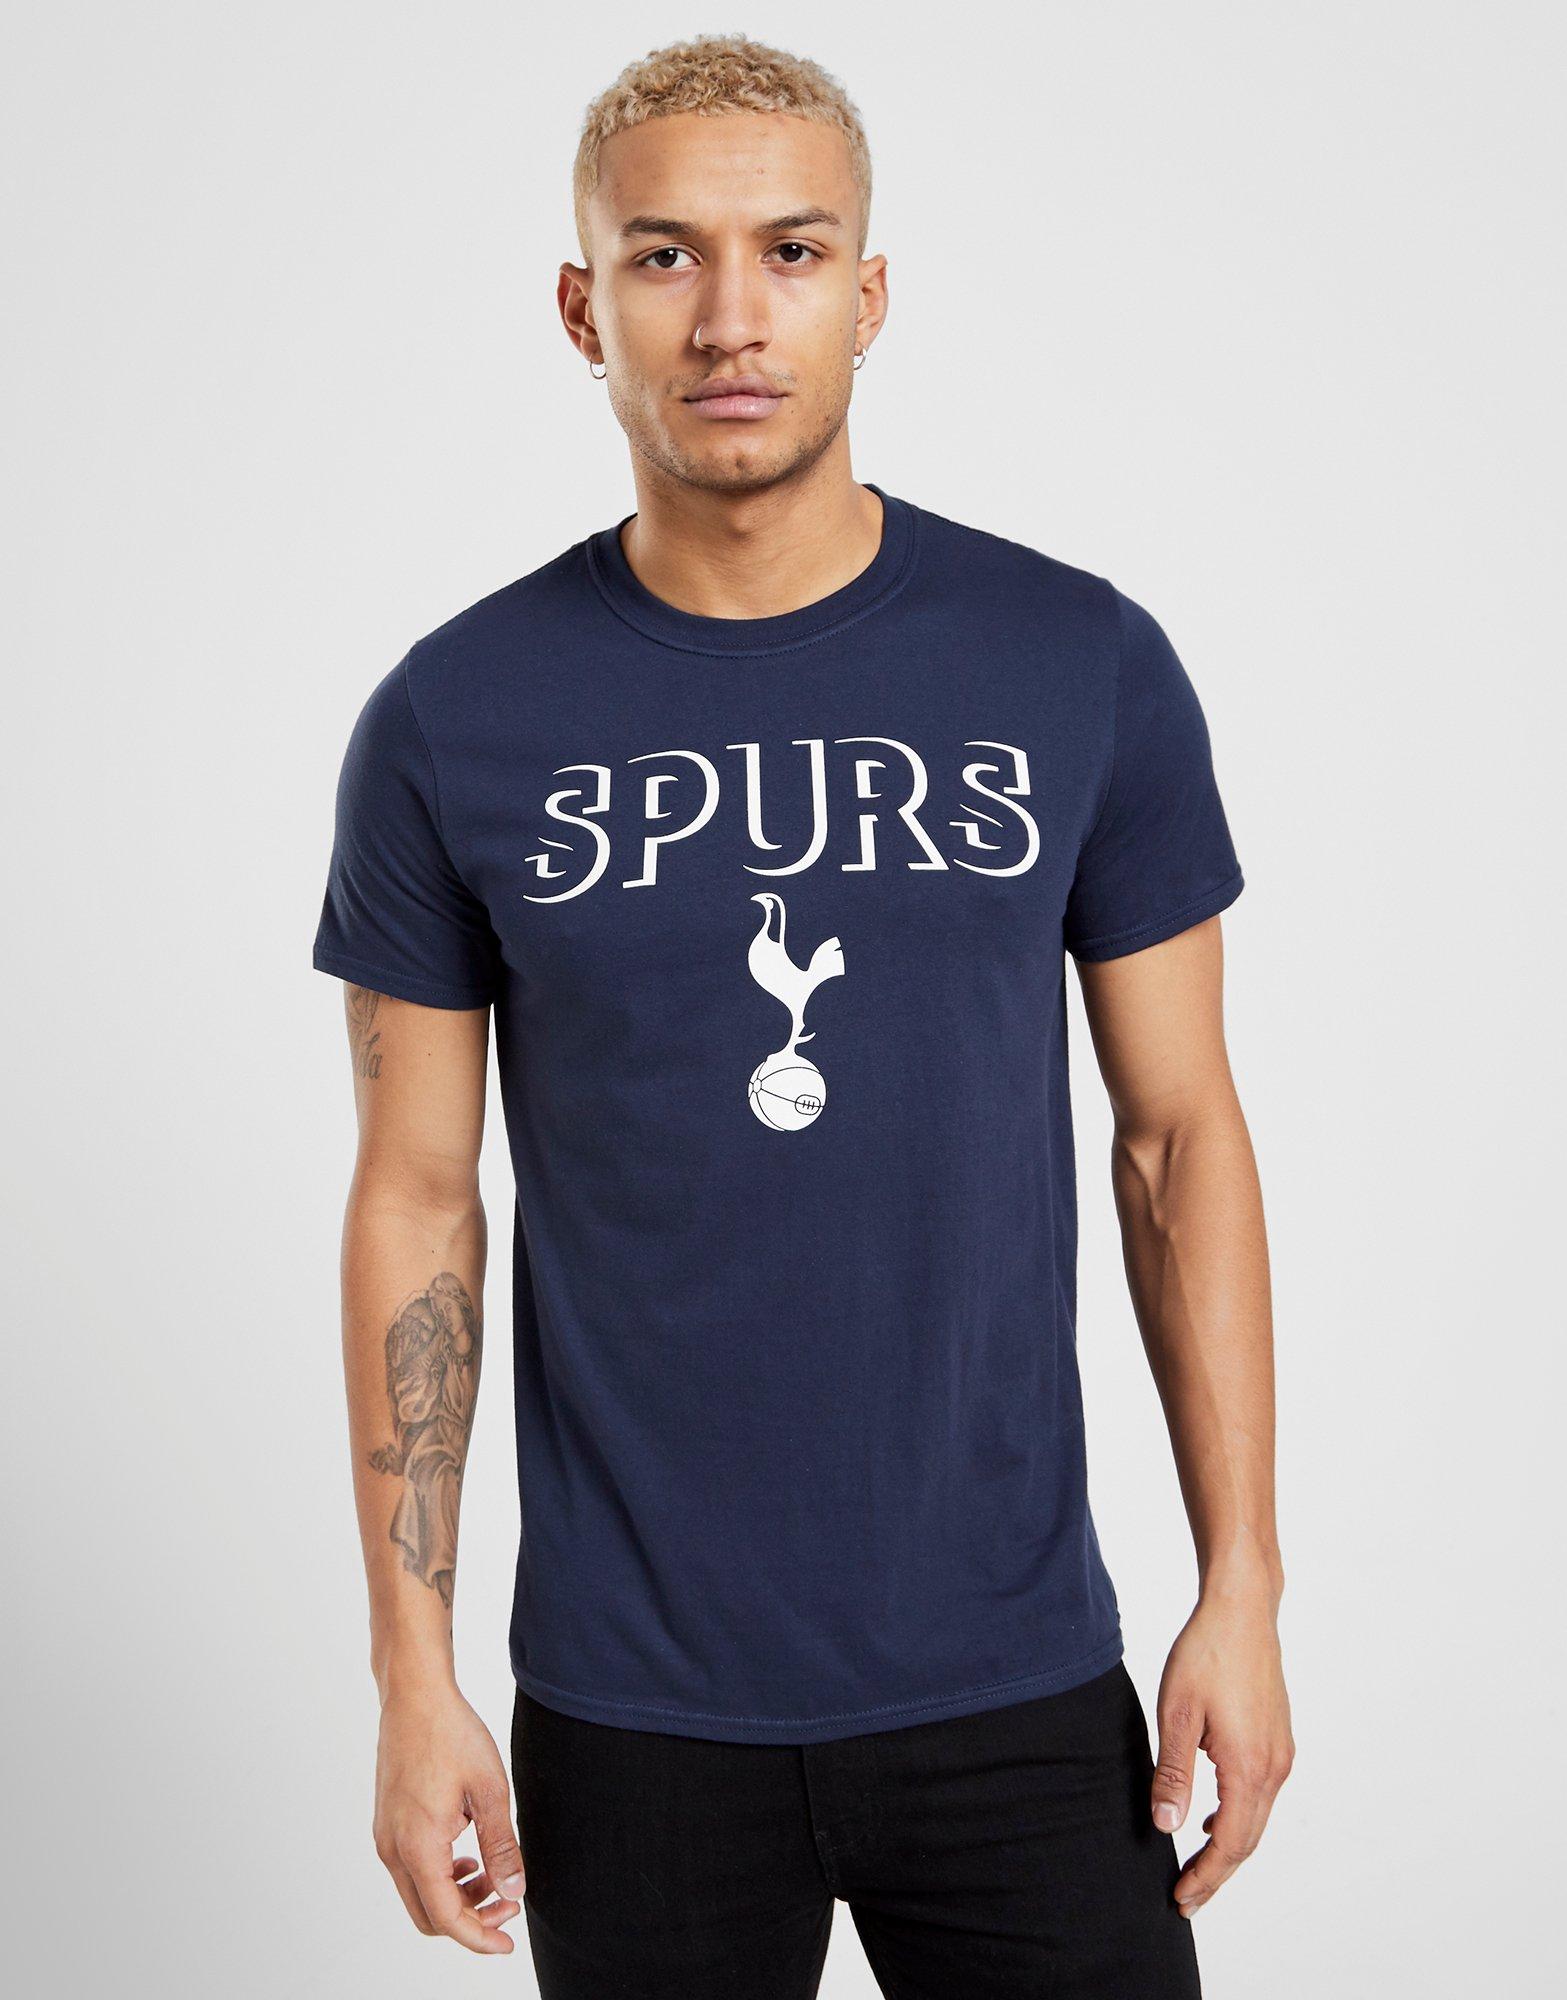 Spurs Mens 67 Crest Long Sleeve Cotton Top